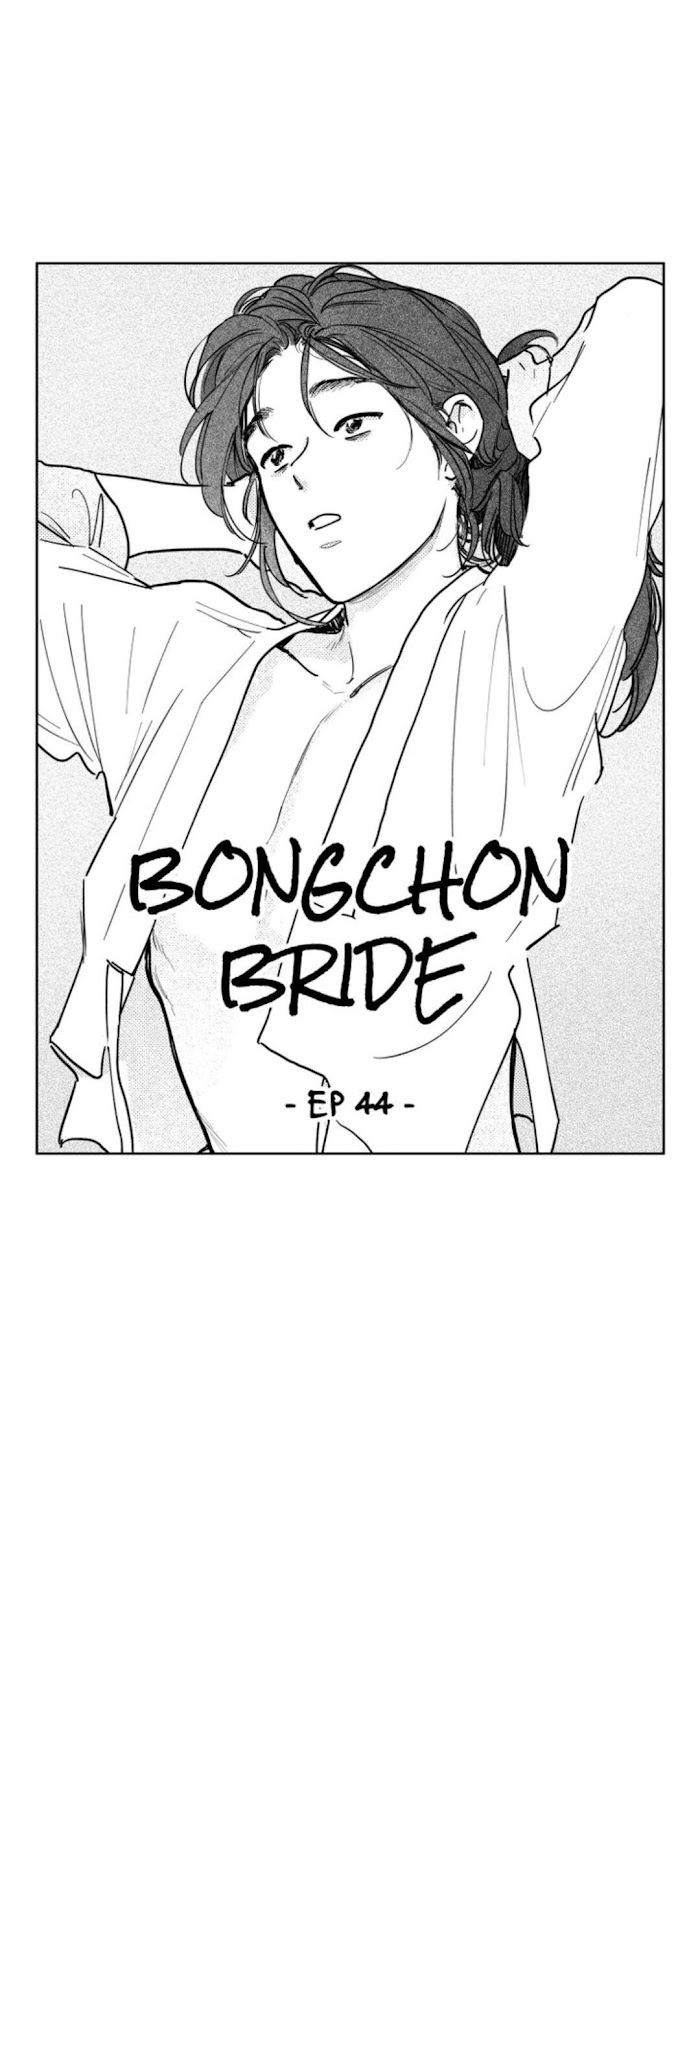 Bongchon Bride - chapter 44 - #1